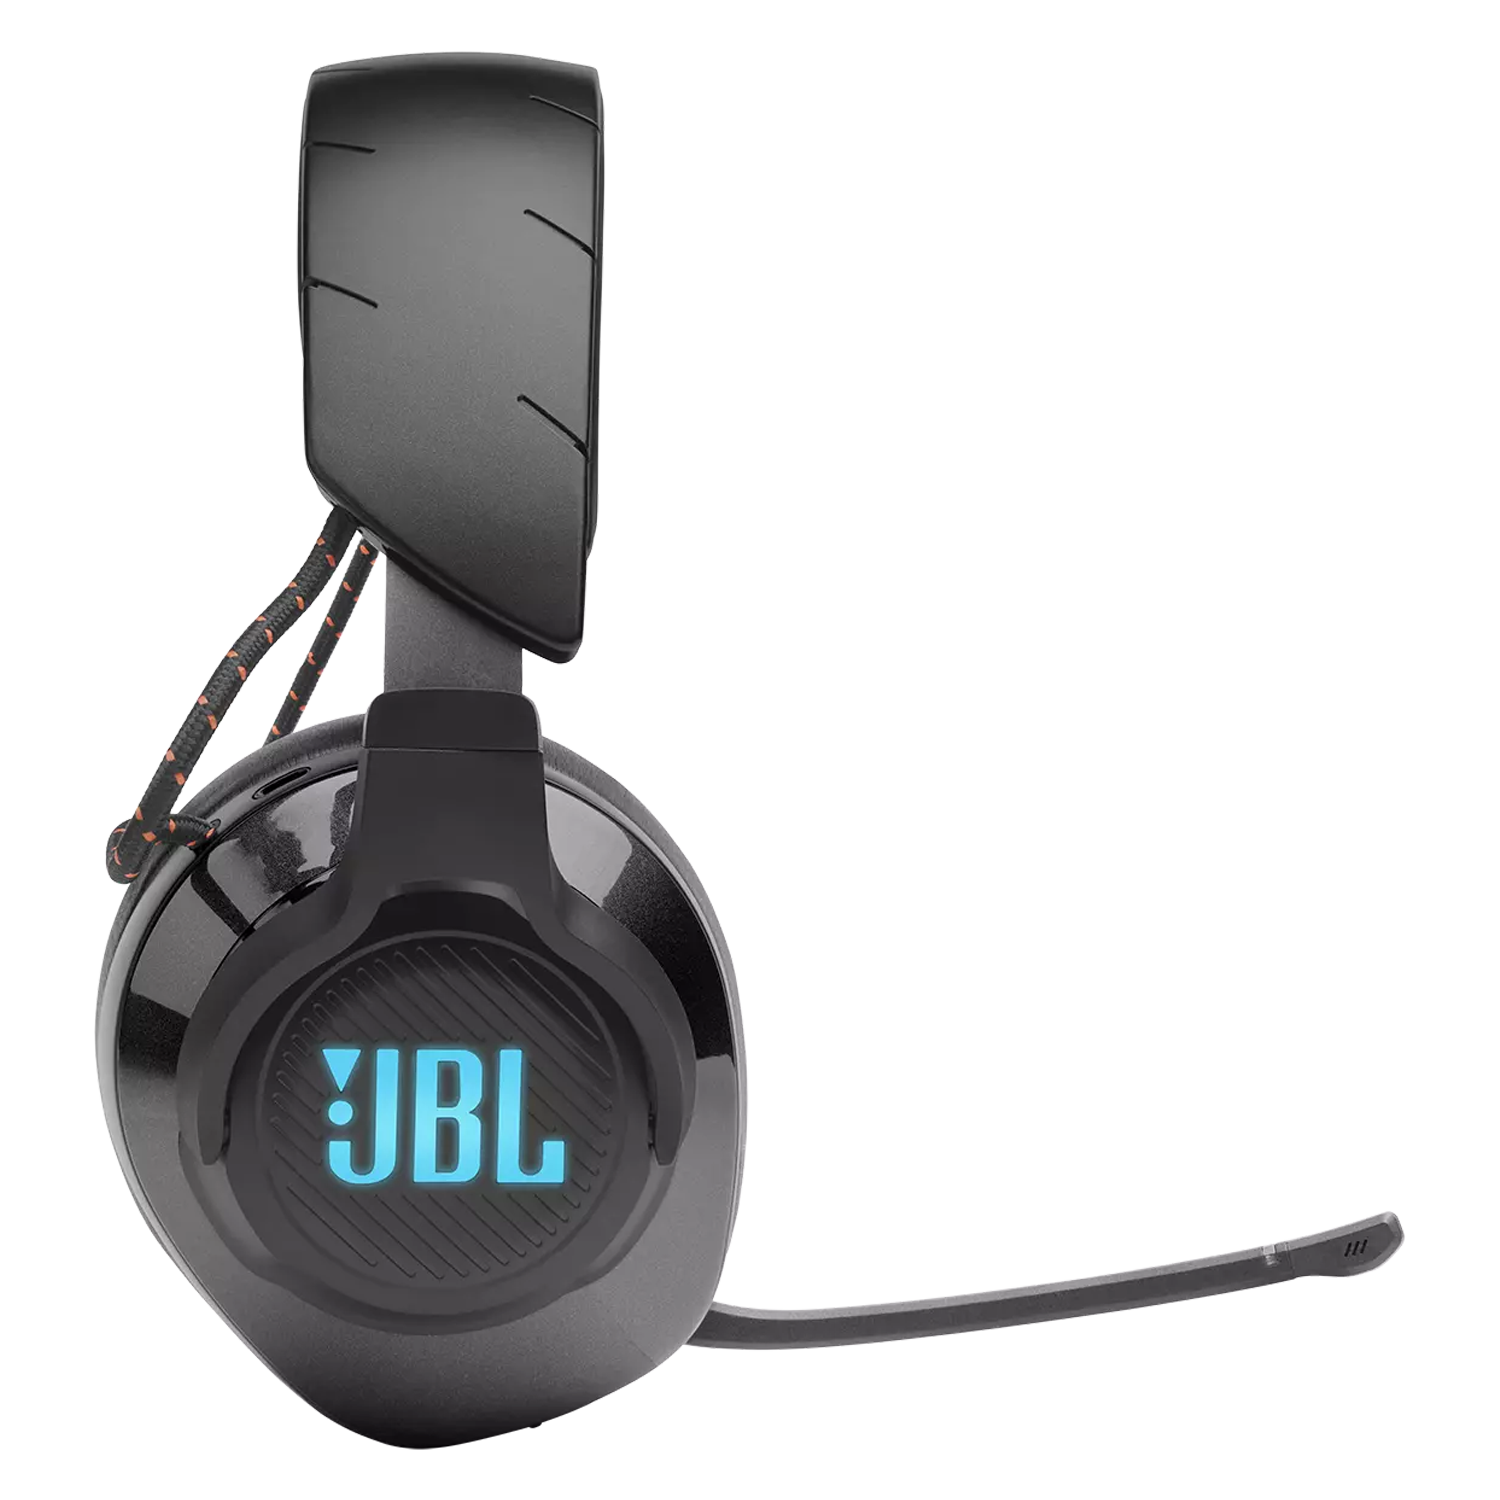 Headset Gamer JBL Quantum 610 Wireless Drivers 40mm / RGB - Preto